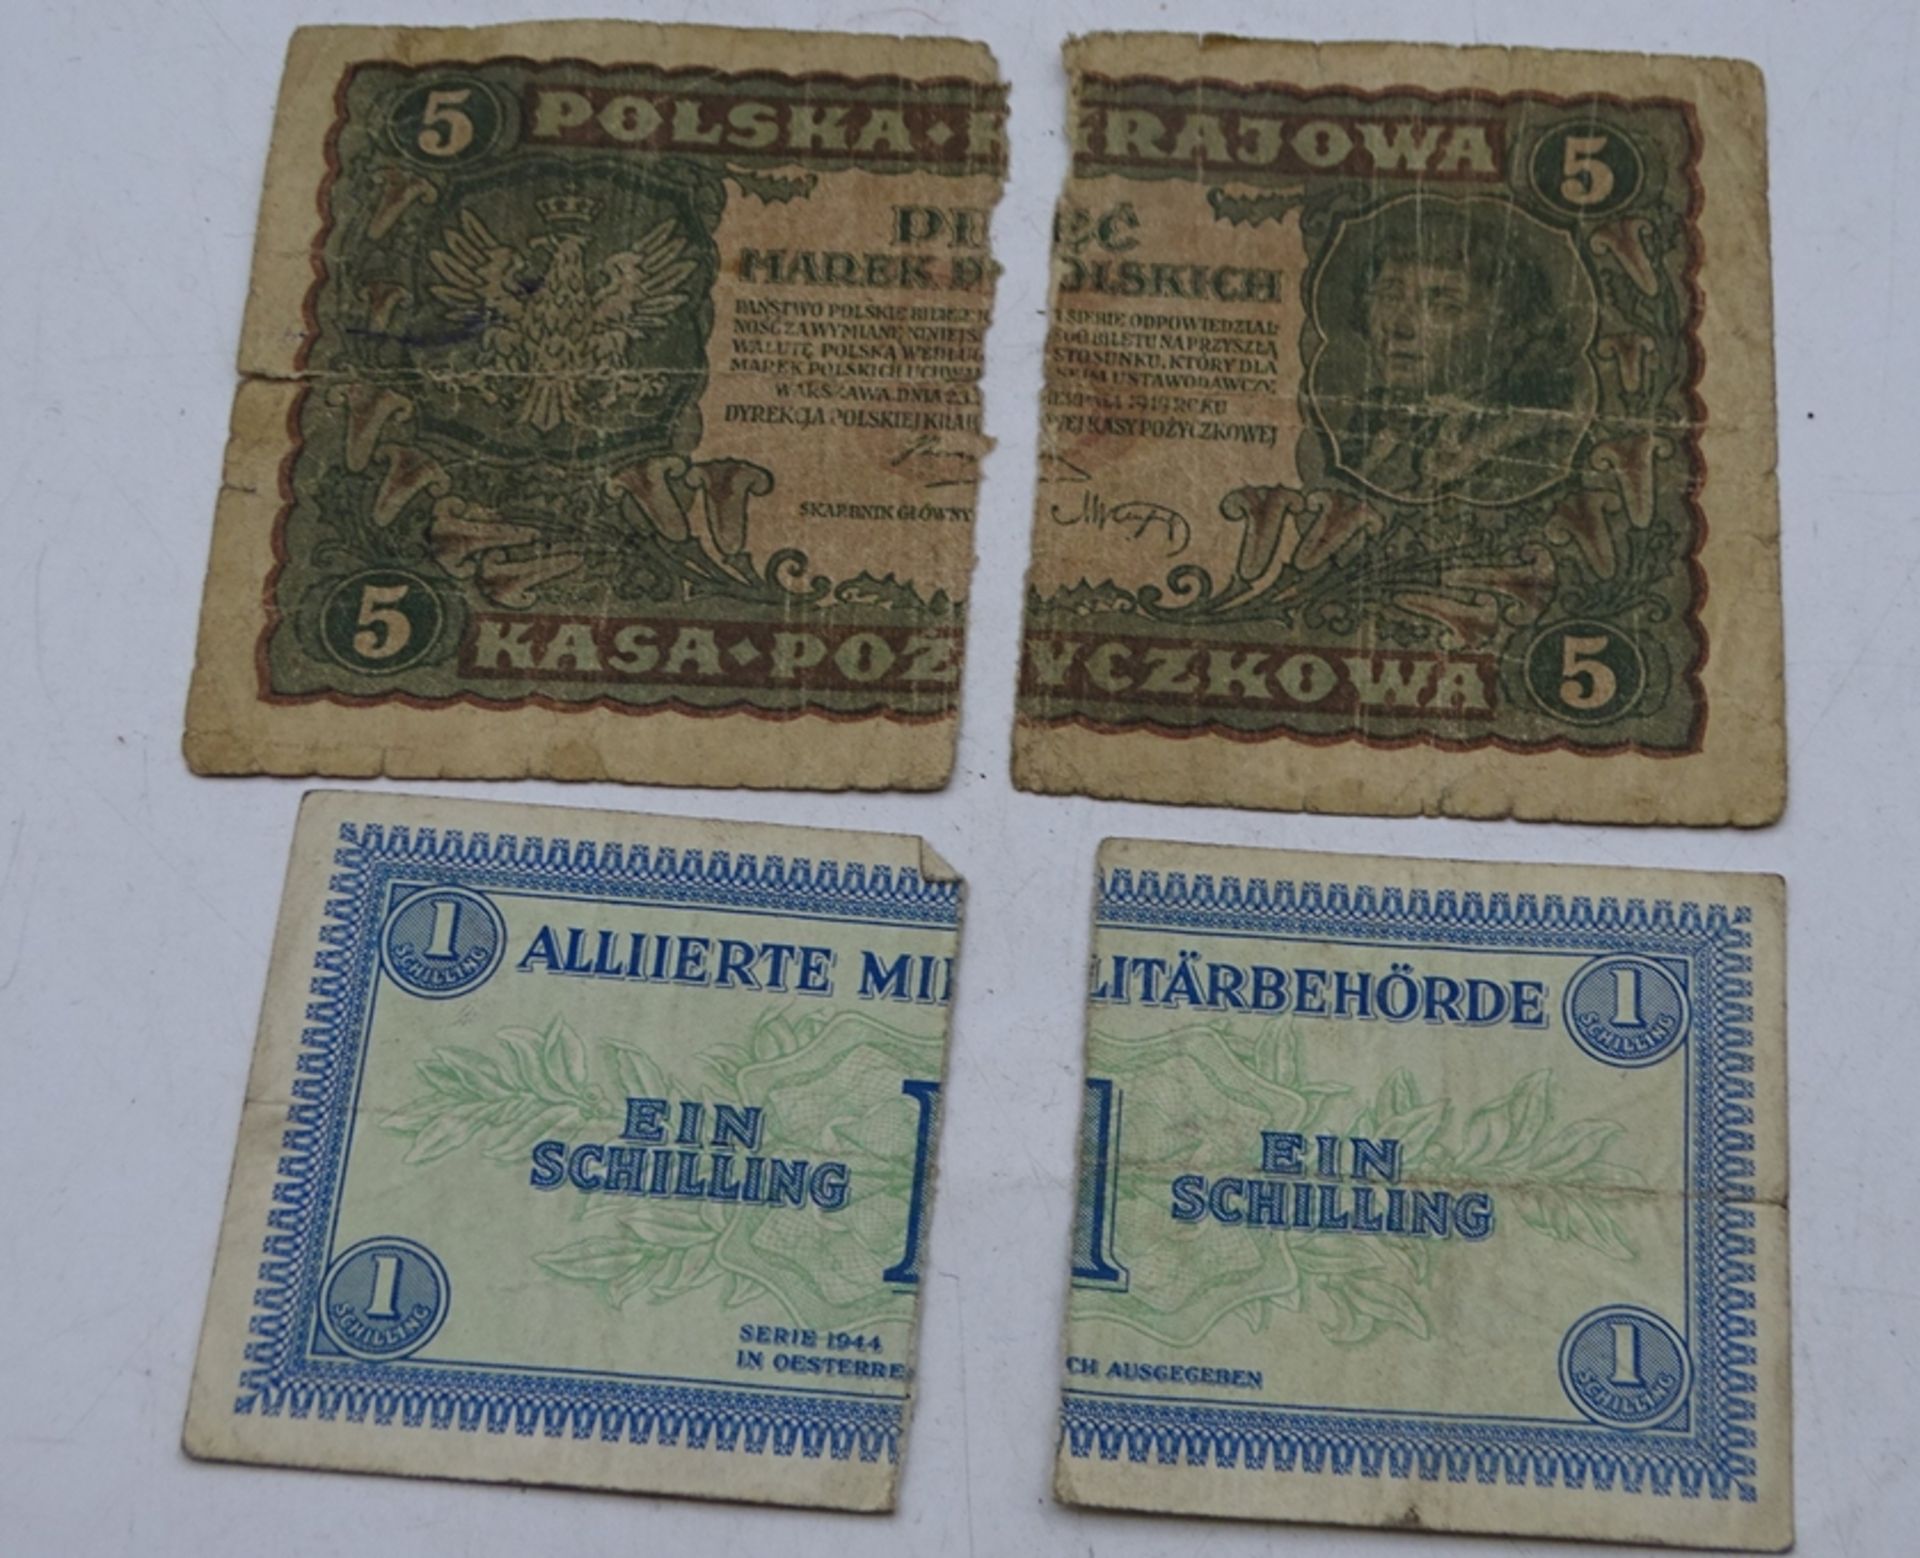 ca. 45 Banknoten, Deutsches Reich und Polen - Image 5 of 5